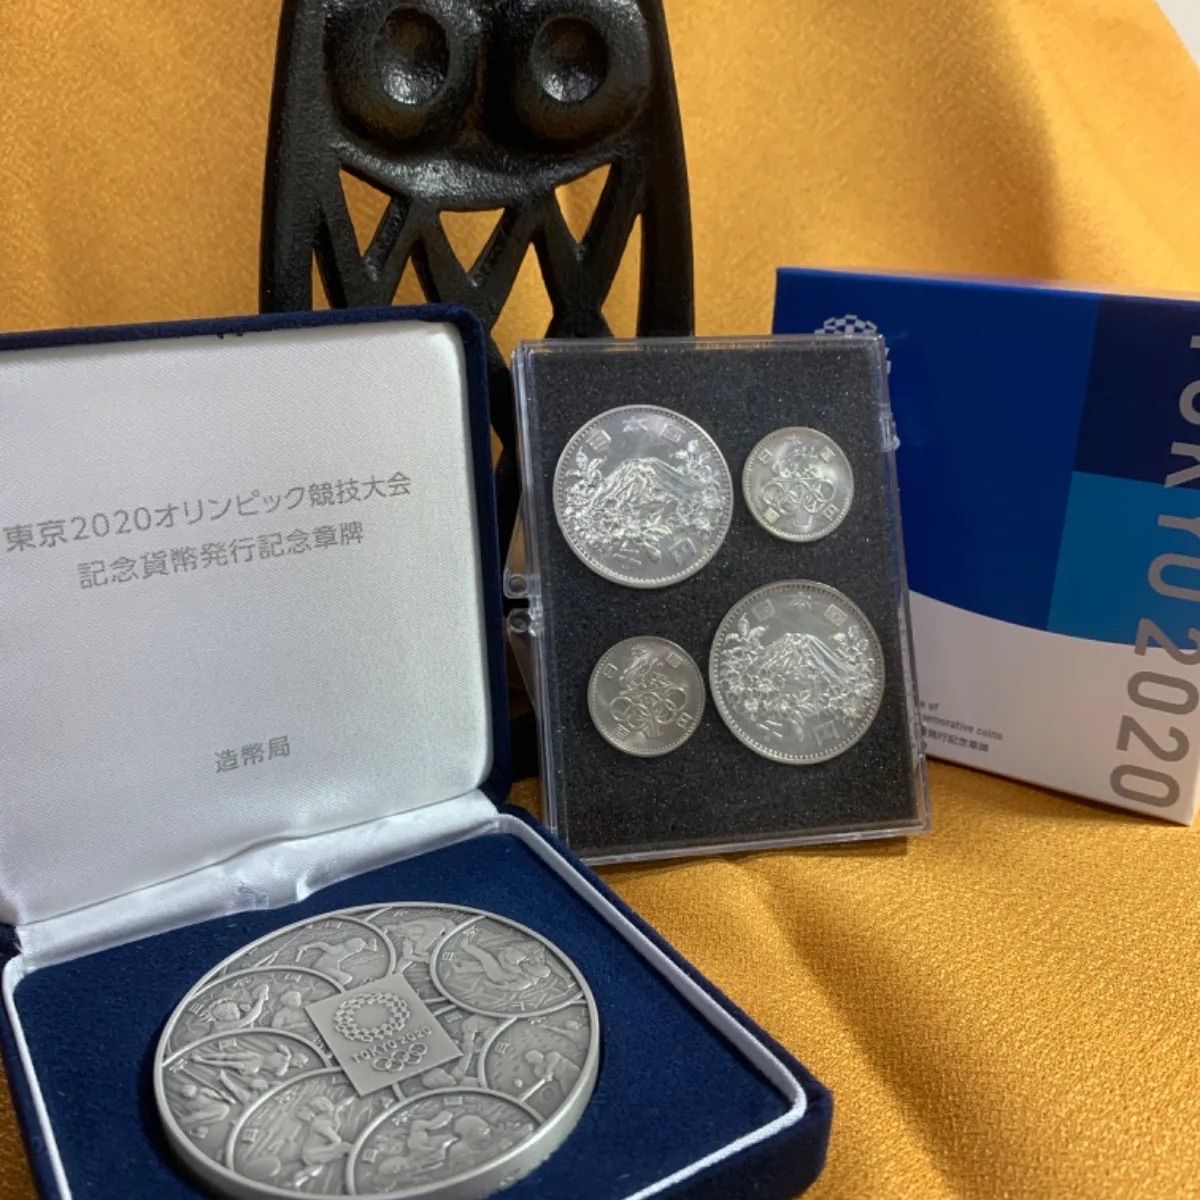 東京2020オリンピック競技大会記念貨幣発行記念章牌+ご購入感謝品付き